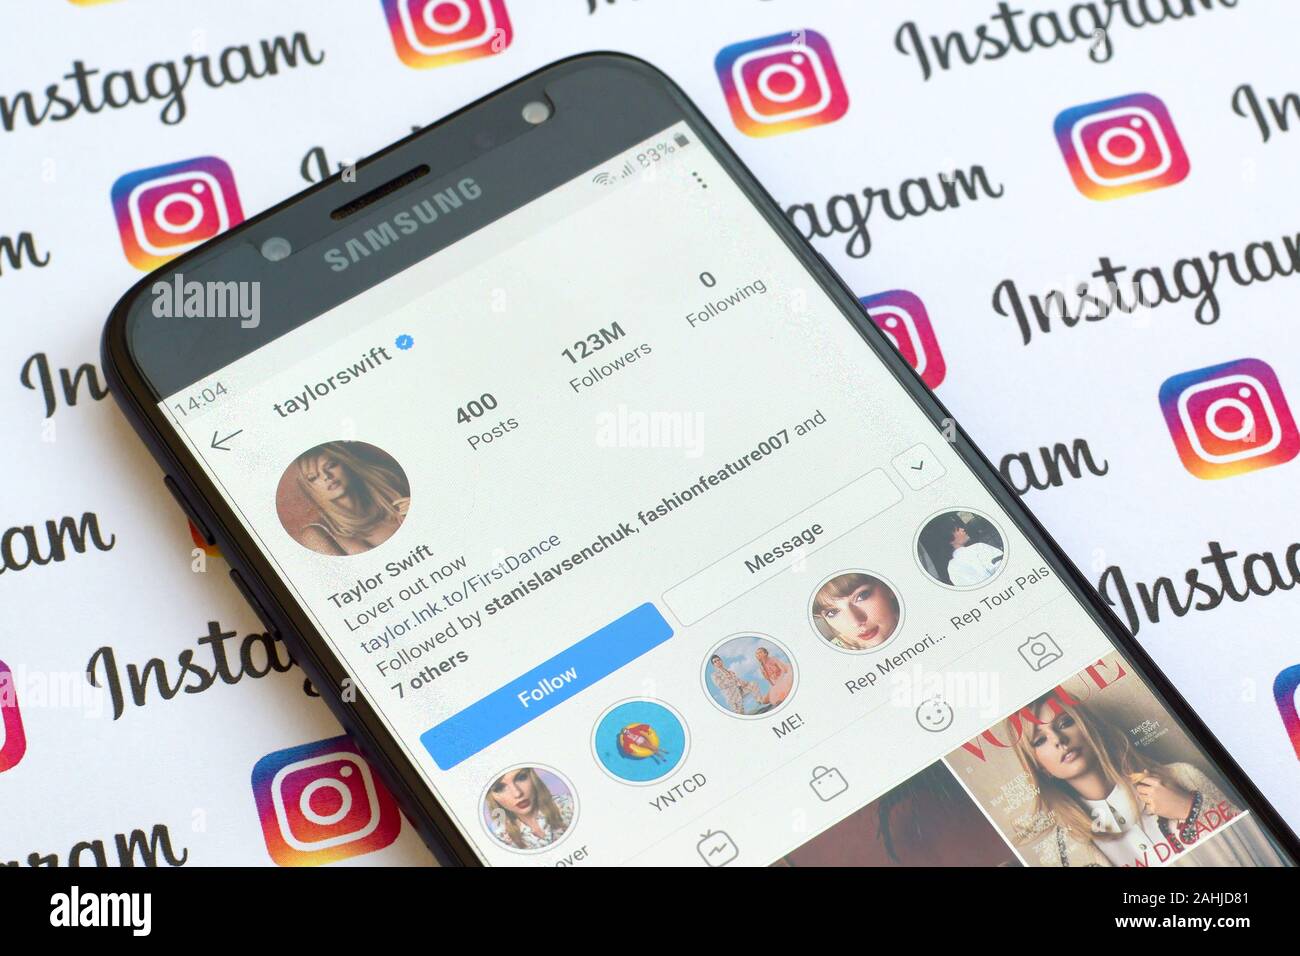 NY, USA - Dezember 4, 2019: Taylor Swift offizielle instagram Konto der Bildschirm des Smartphones auf dem Papier instagram Banner. Stockfoto